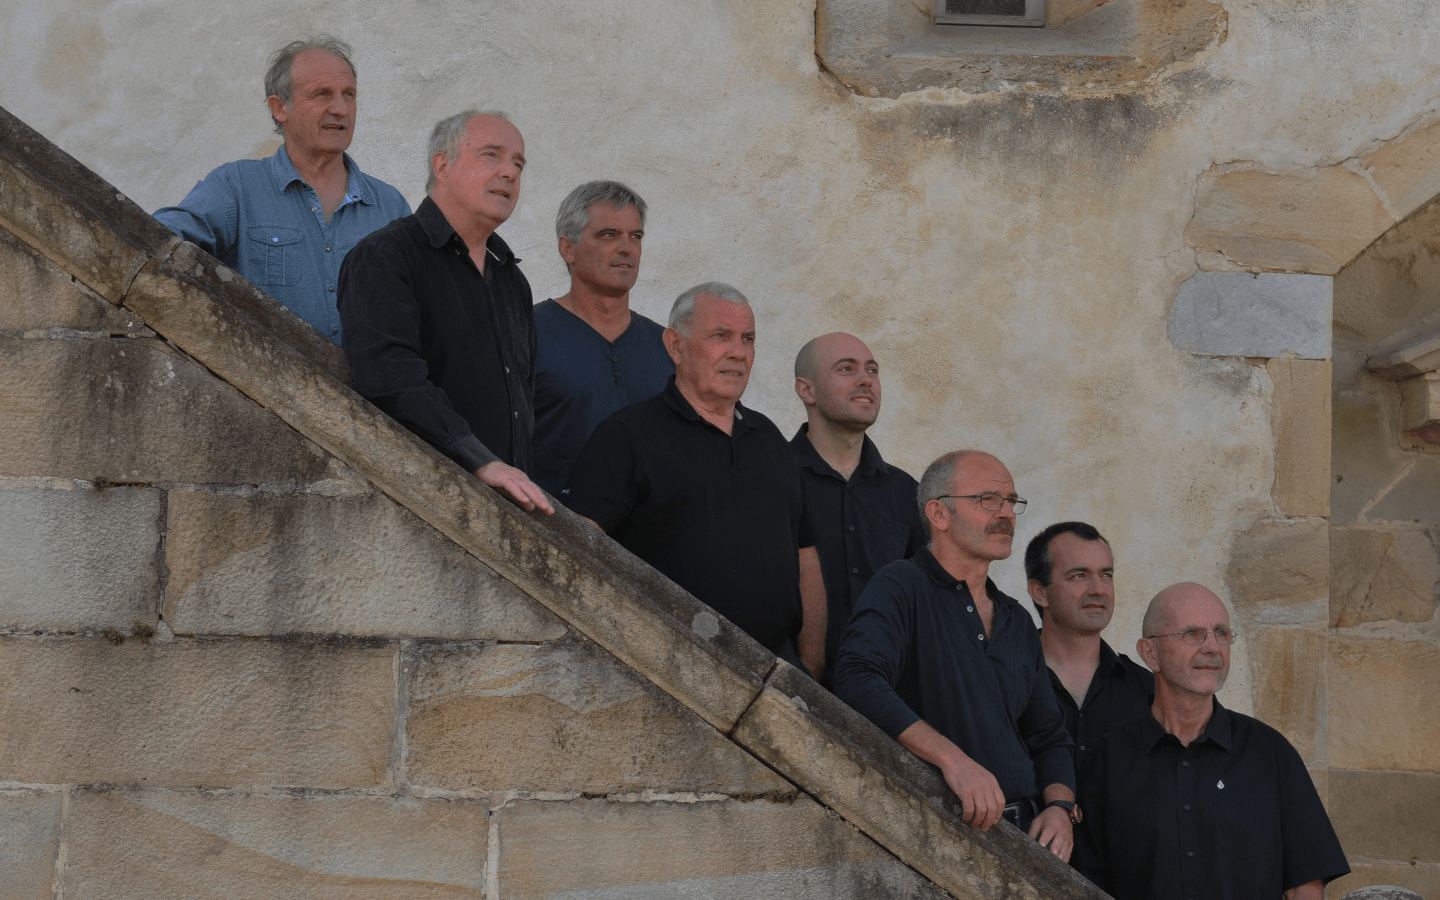 Concert de chants basques avec le groupe Saiberri